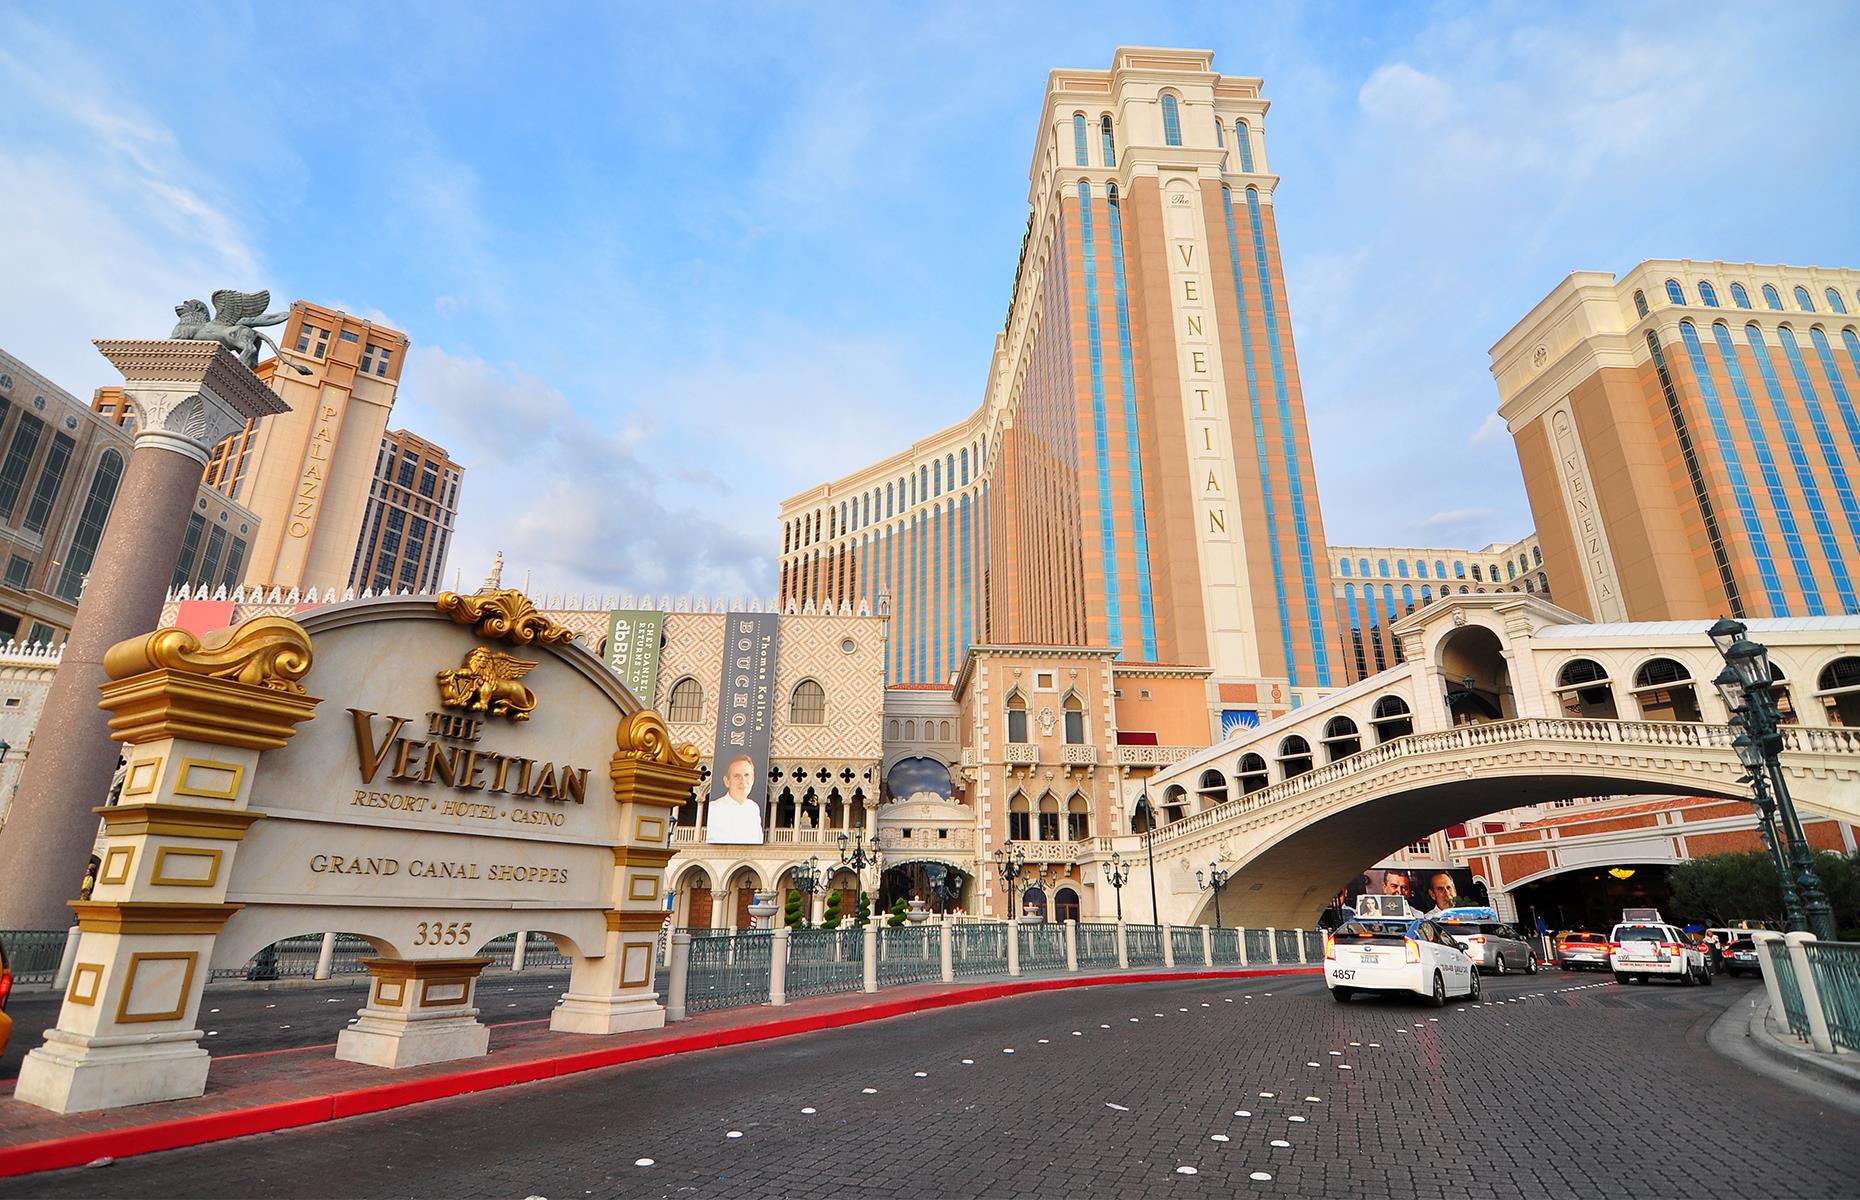 9. The Venetian Las Vegas: $2.67 billion